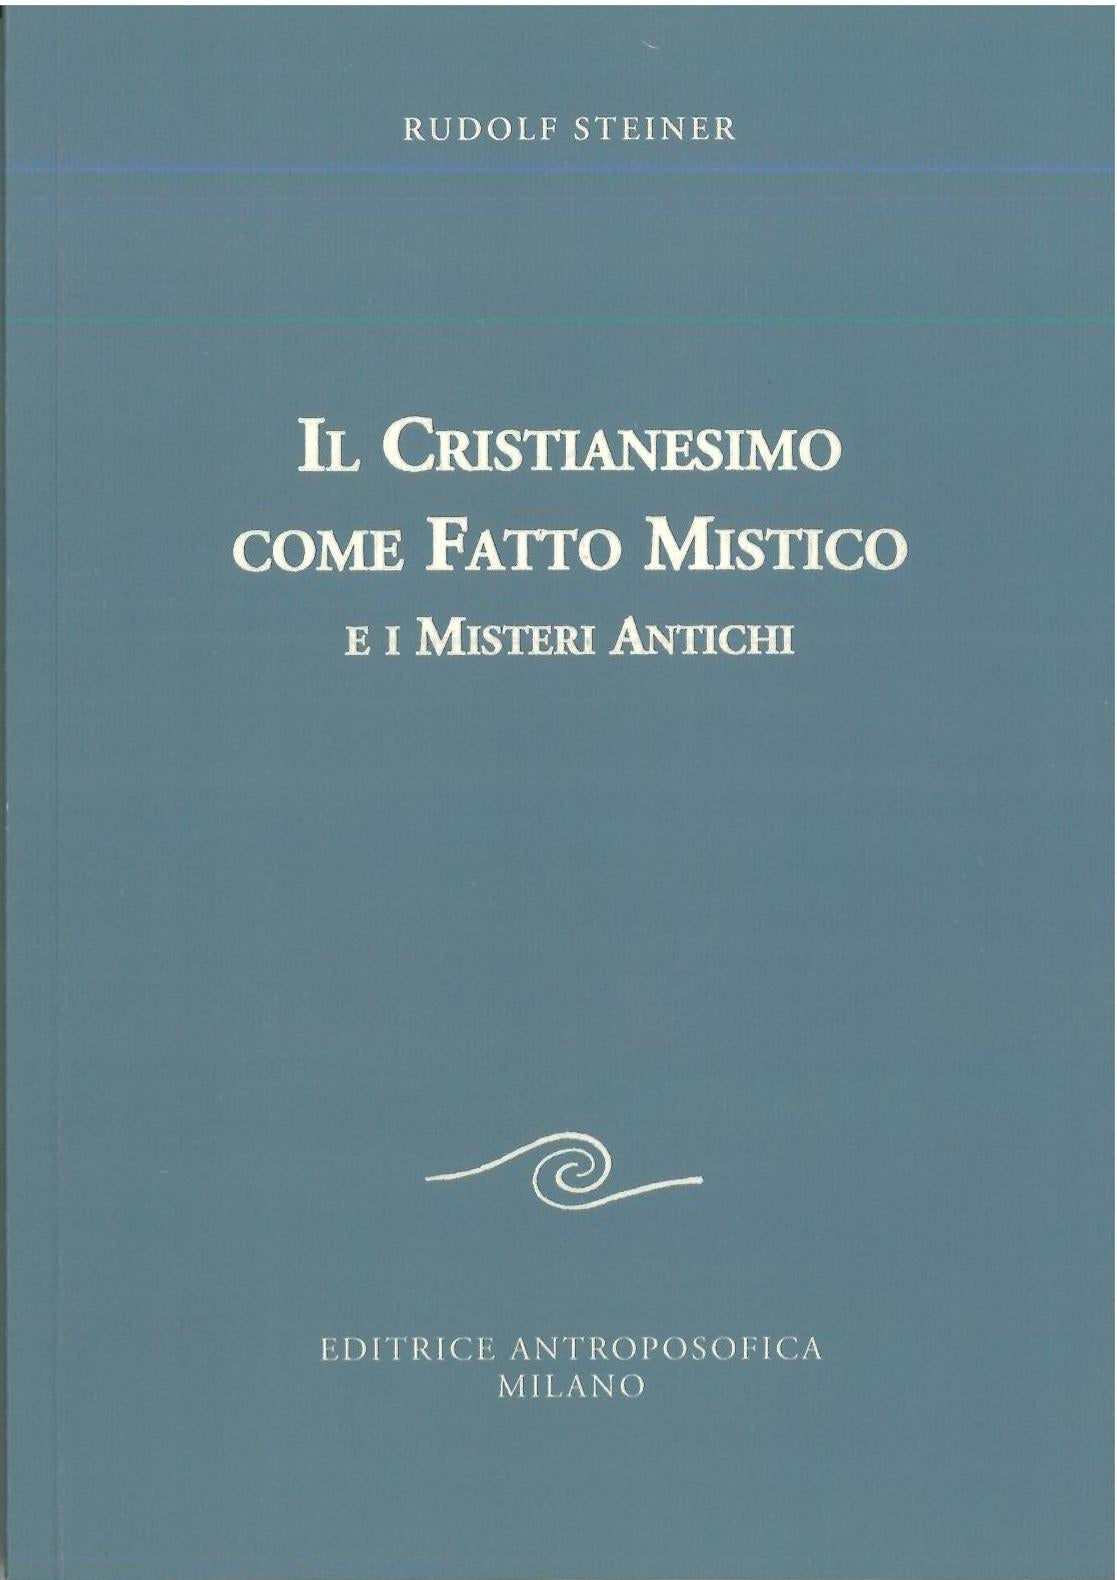 Il Cristianesimo come fatto mistico e i misteri antichi - Rudolf Steiner